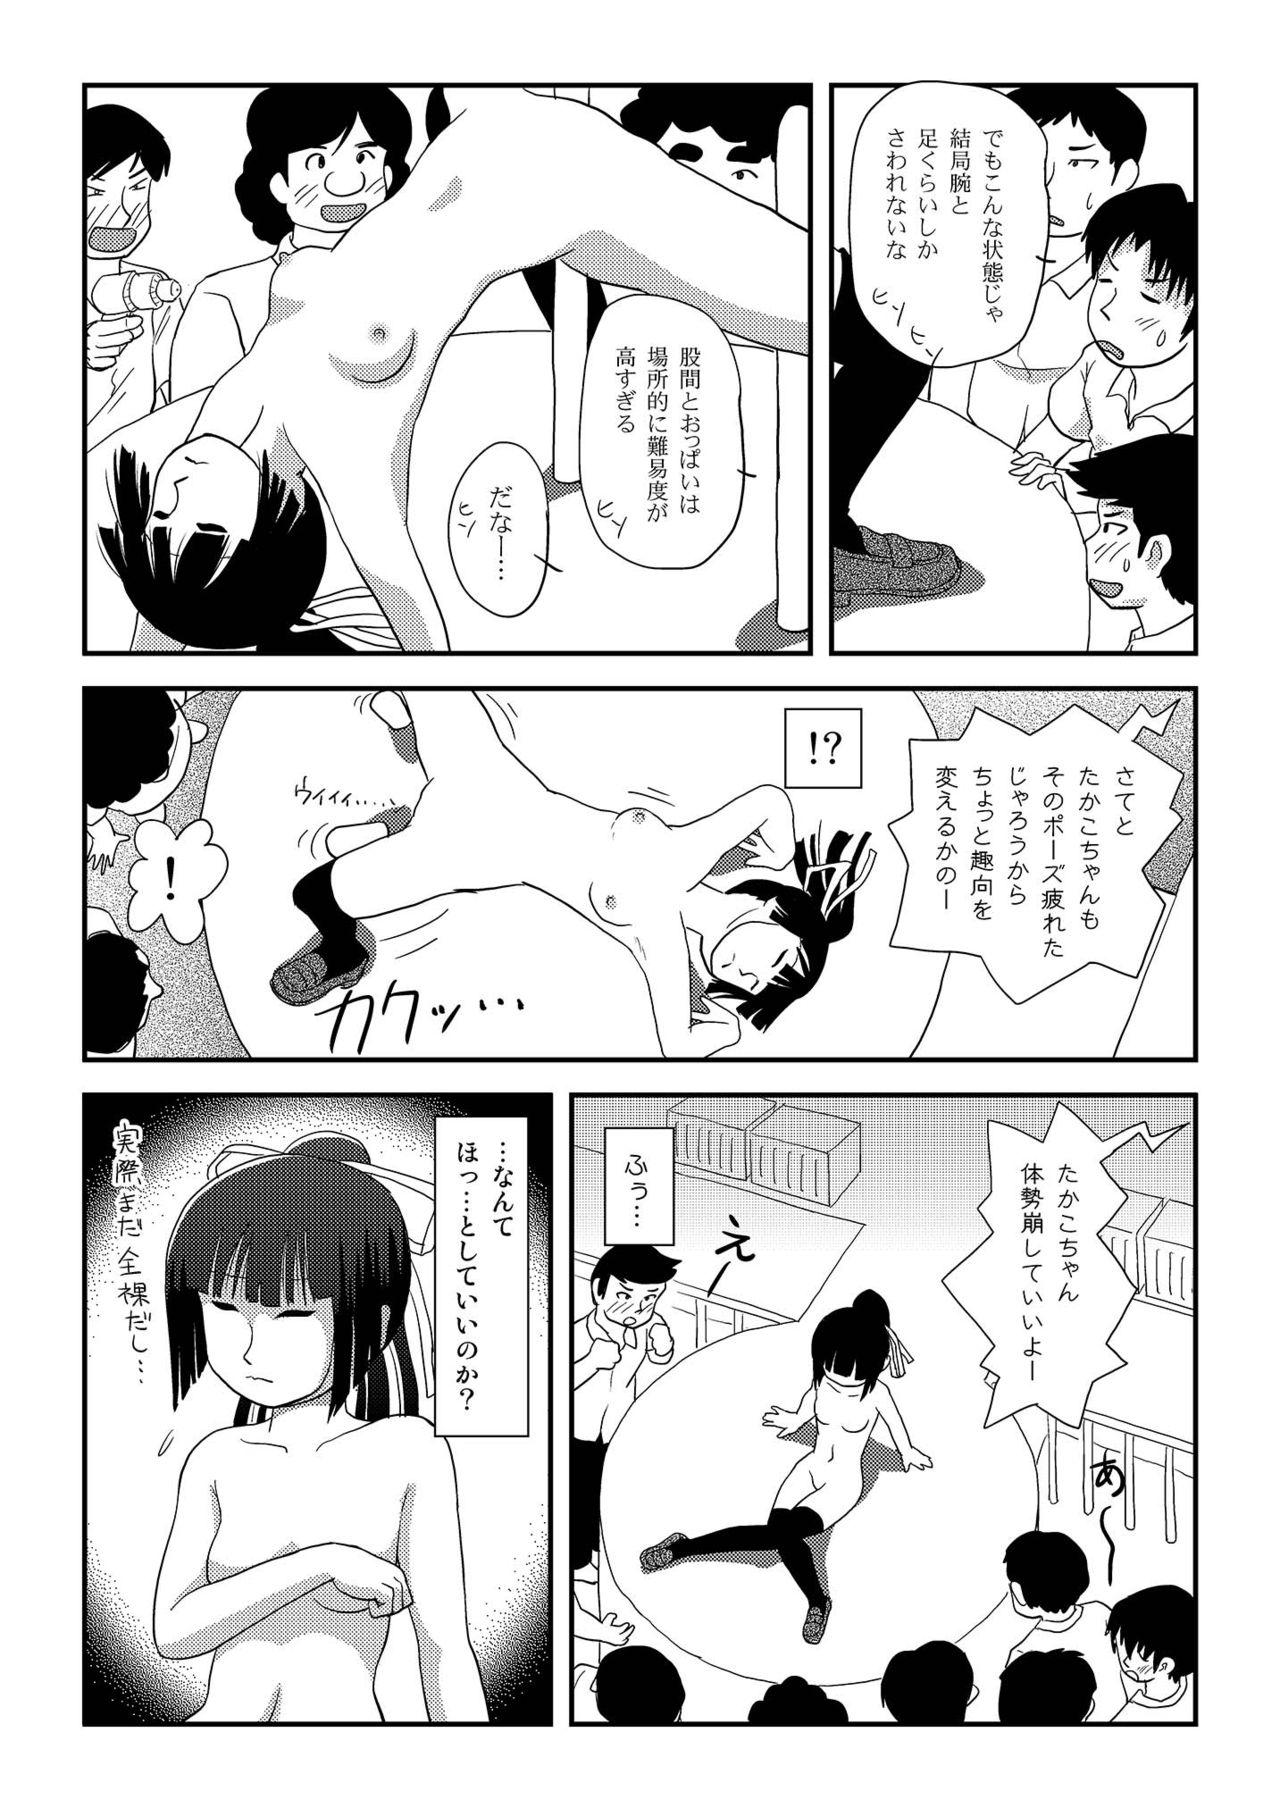 Female Domination Sakura Kotaka no Roshutsubiyori 8 - Original Celeb - Page 8